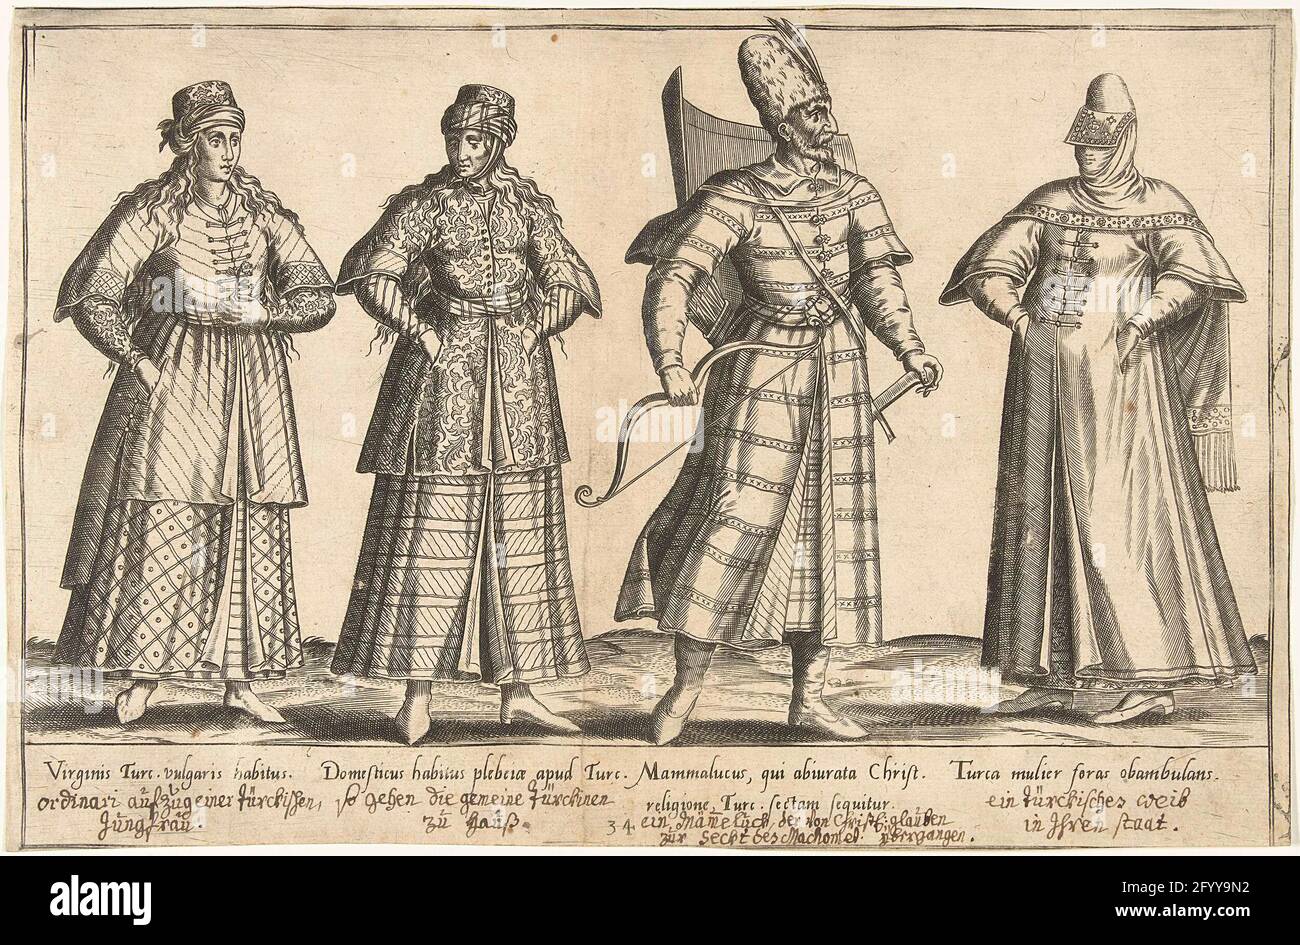 Abbigliamento Ottomano intorno al 1580; abbigliamento tradizionale da tutto  il mondo intorno al 1580. Stampa di un libro sull'abbigliamento  cinquecentesco intorno al 1580. Tre donne e un uomo di origine ottomana.  Tutti